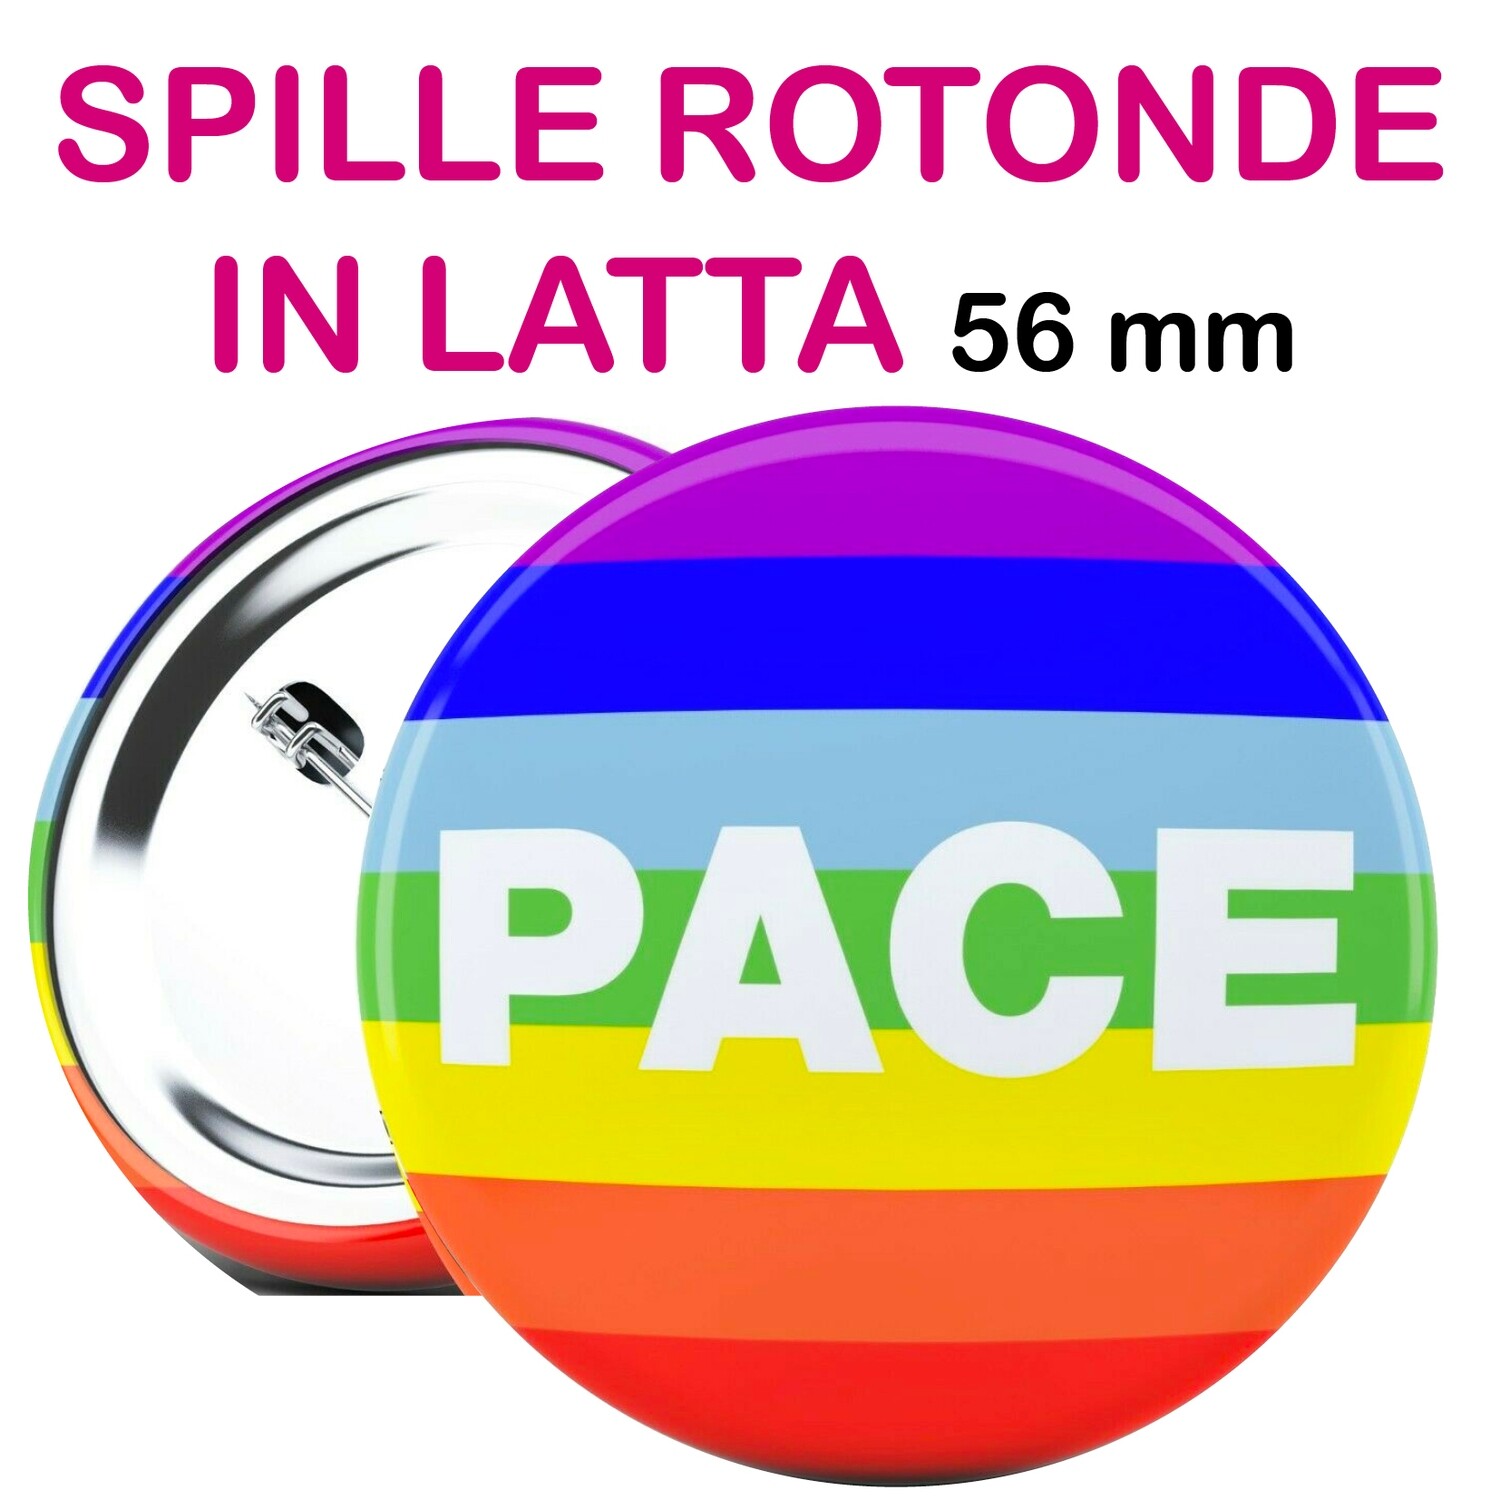 SPILLA o MAGNETE in Latta PACE diametro 56 mm